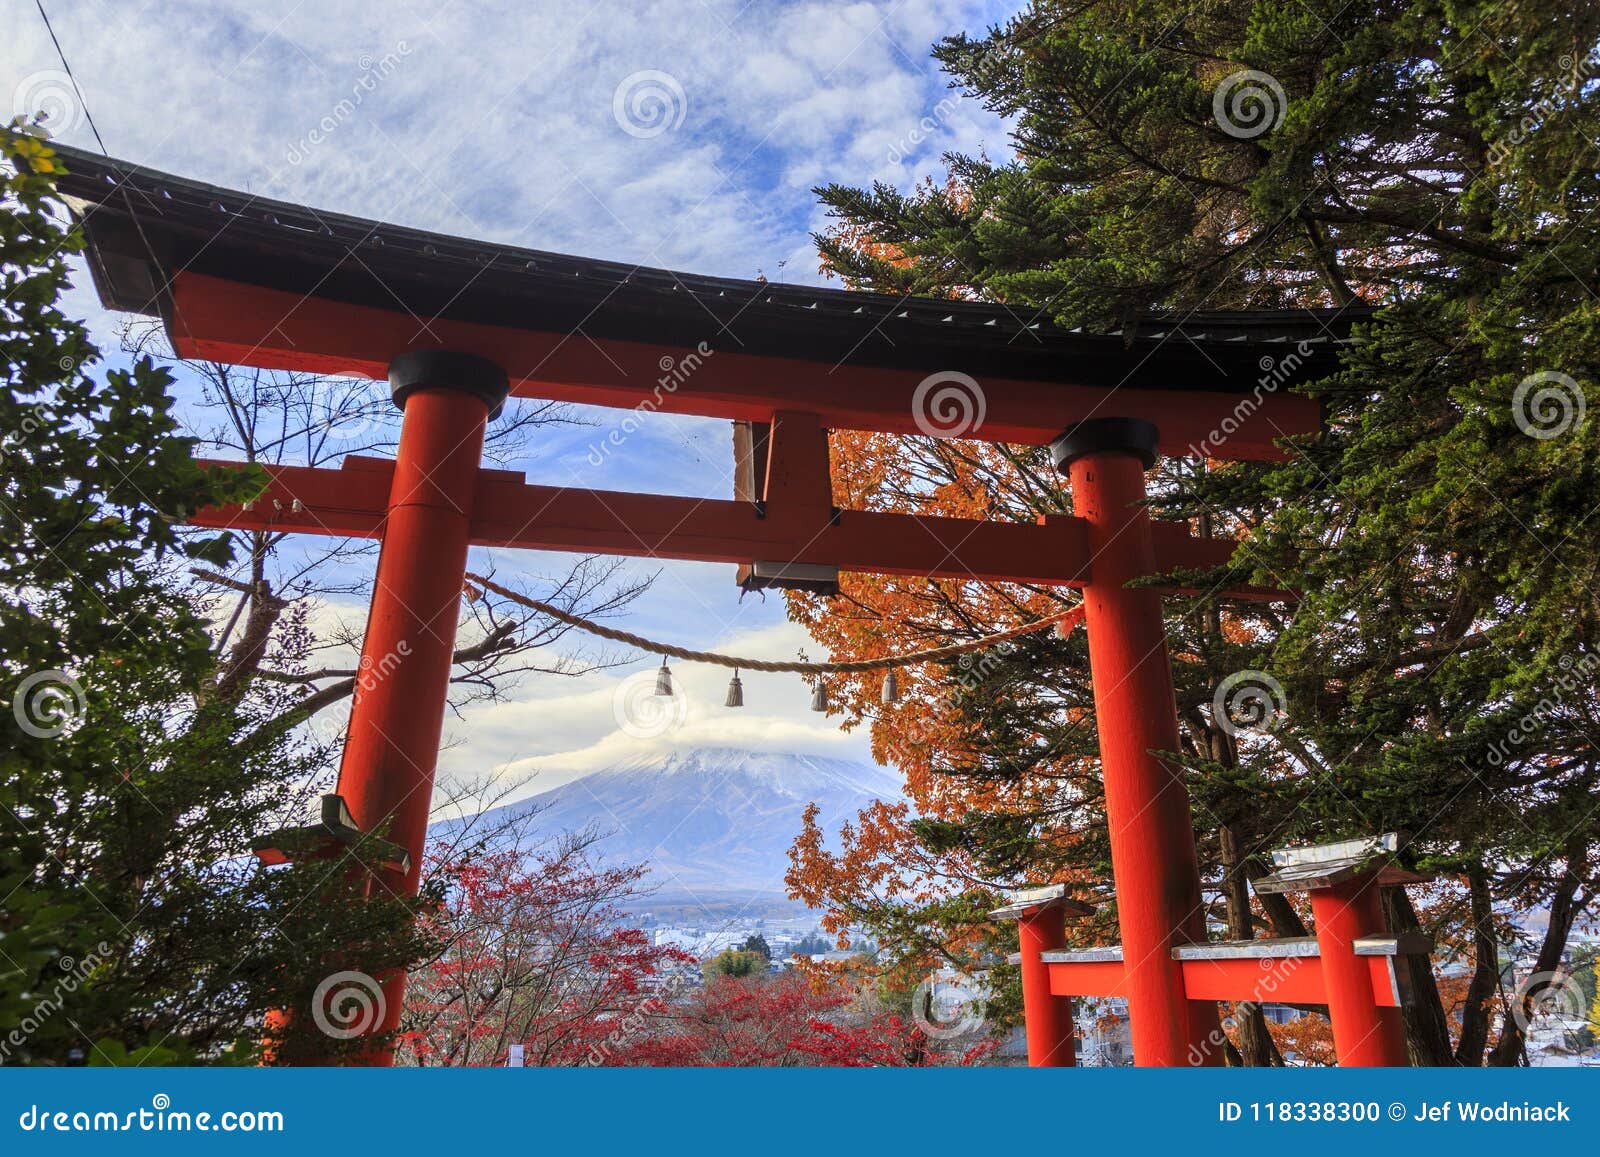 torii at shintoist temple at shimoyoshida, fujiyoshida